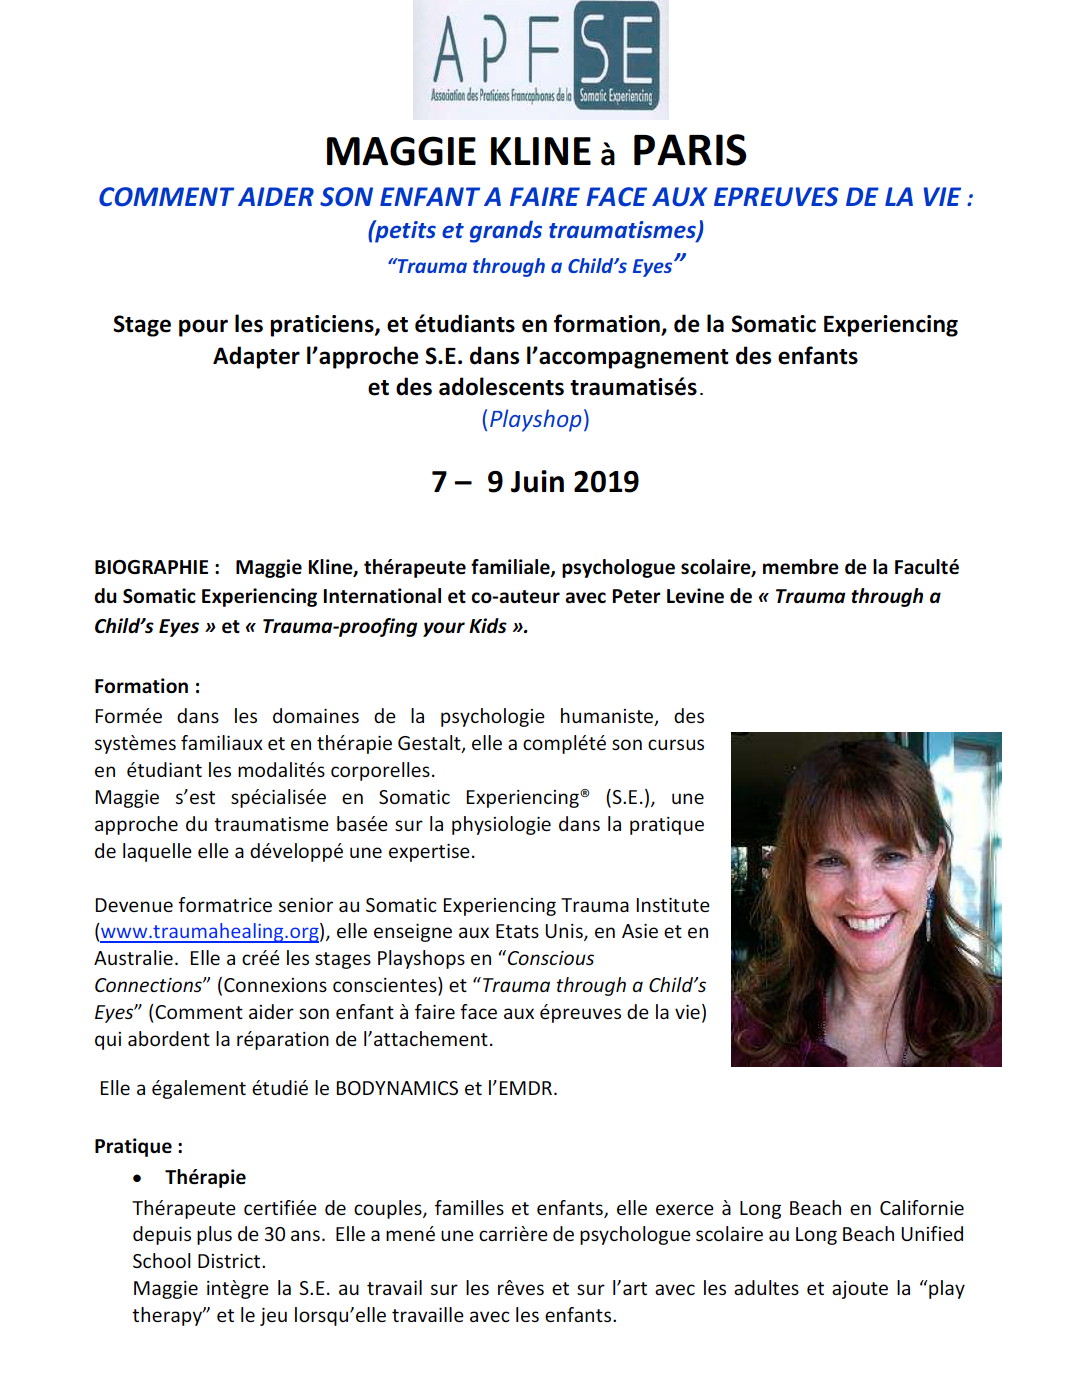 STAGE COMPLET-Maggie Kline à Paris – Comment aider son enfant à faire face aux épreuves de la vie  (7-9 Juin 2019)